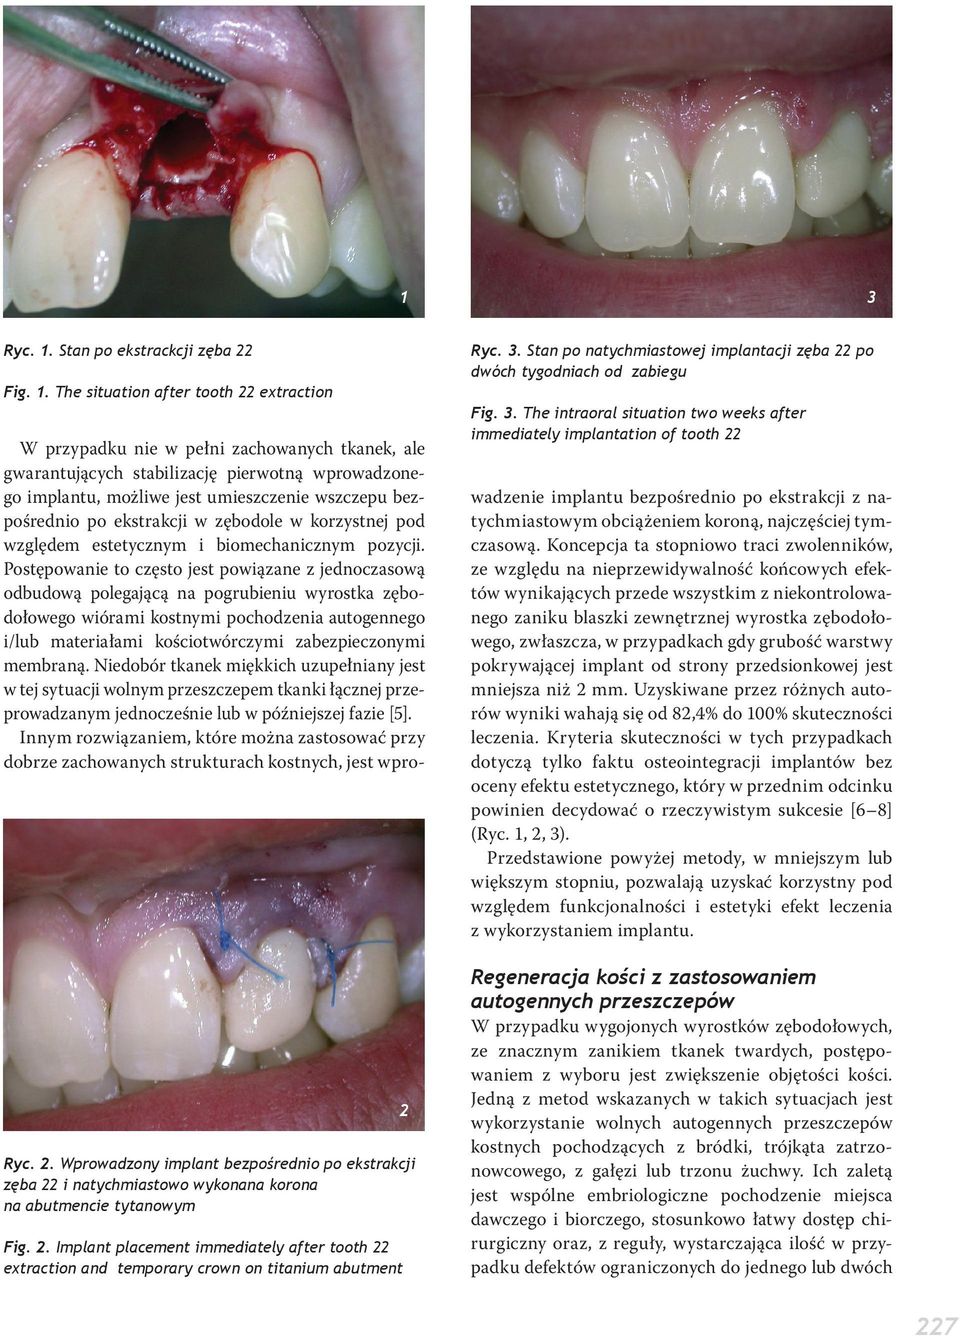 Stan po natychmiastowej implantacji zęba 22 po dwóch tygodniach od zabiegu Fig. 3.